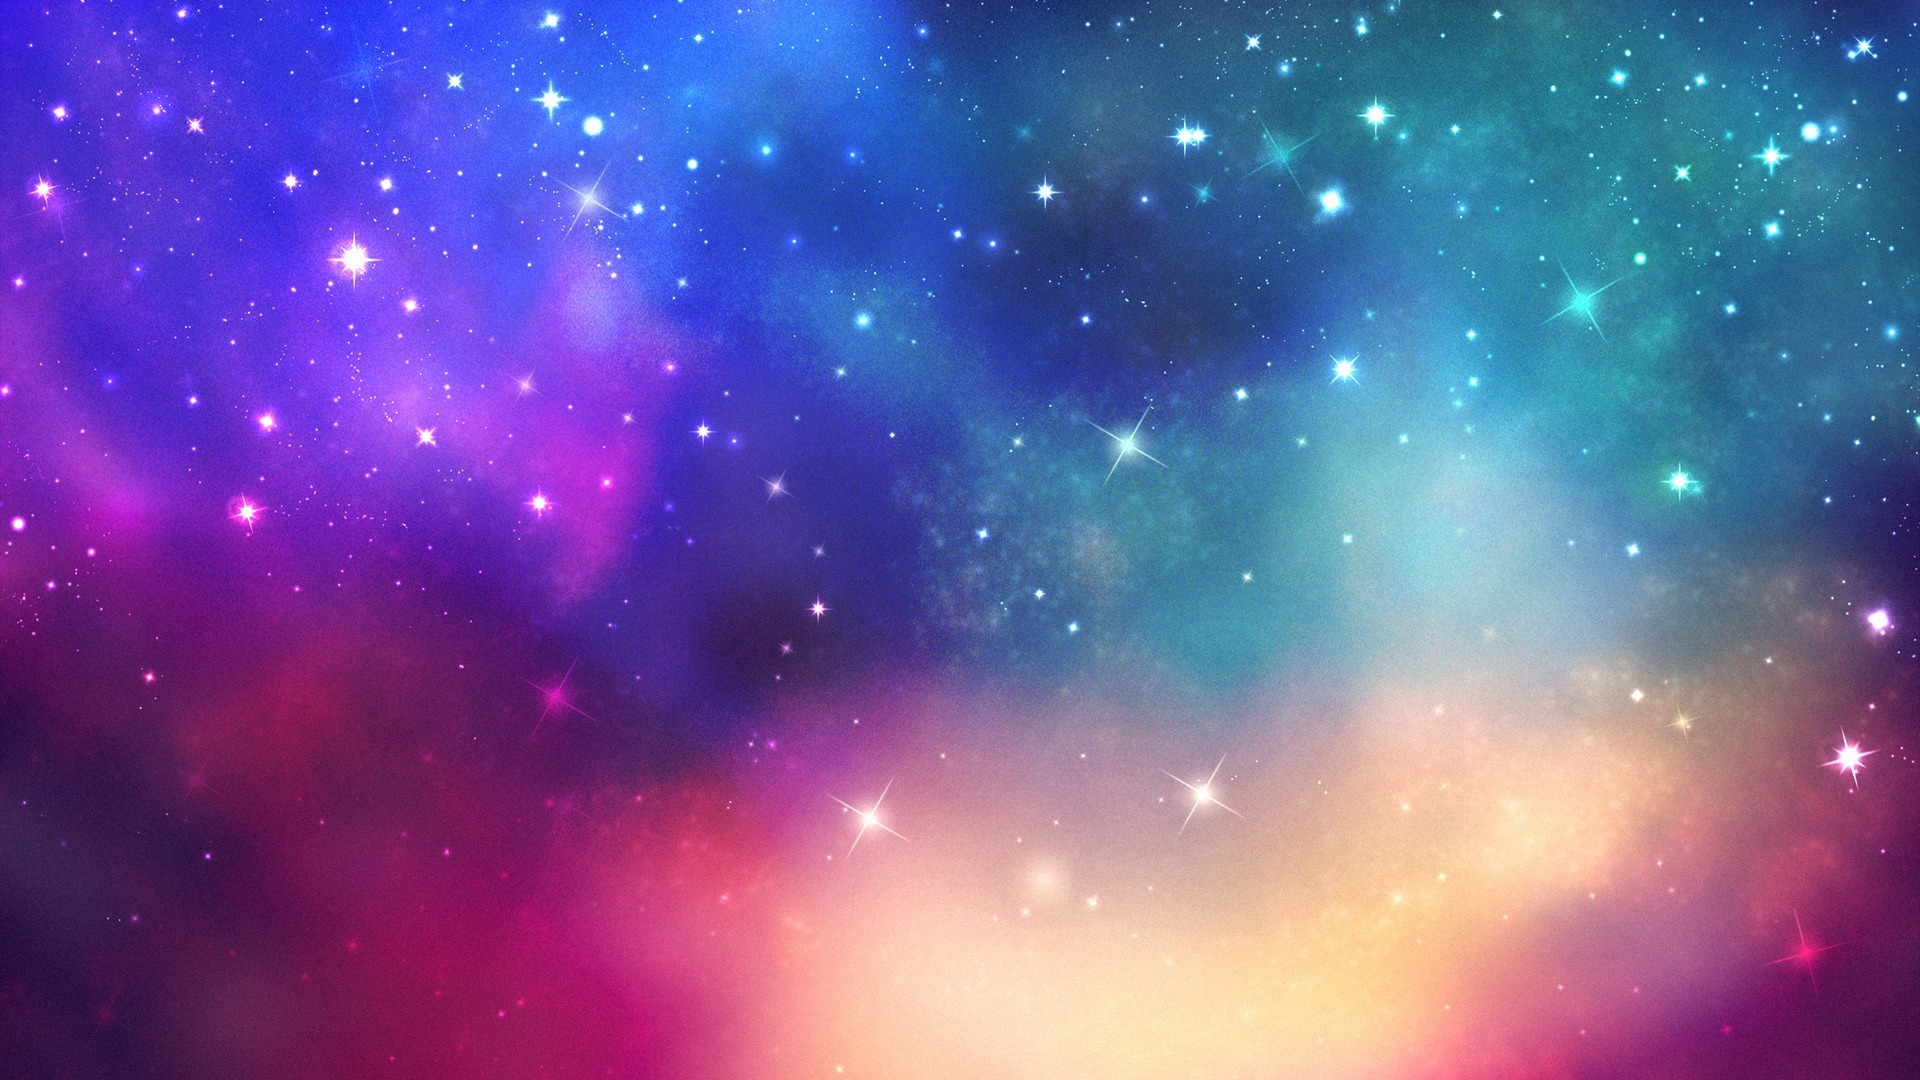 Thiên hà đầy màu sắc là một trong những chủ đề thú vị nhất để sáng tạo hình nền cho máy tính. Hình nền thiên hà đầy màu sắc sẽ làm bạn cảm thấy như mình đang đứng trong một vũ trụ đầy màu sắc và bất tận. Không còn lý do gì để bạn không thưởng thức những hình nền đẹp như thế này.